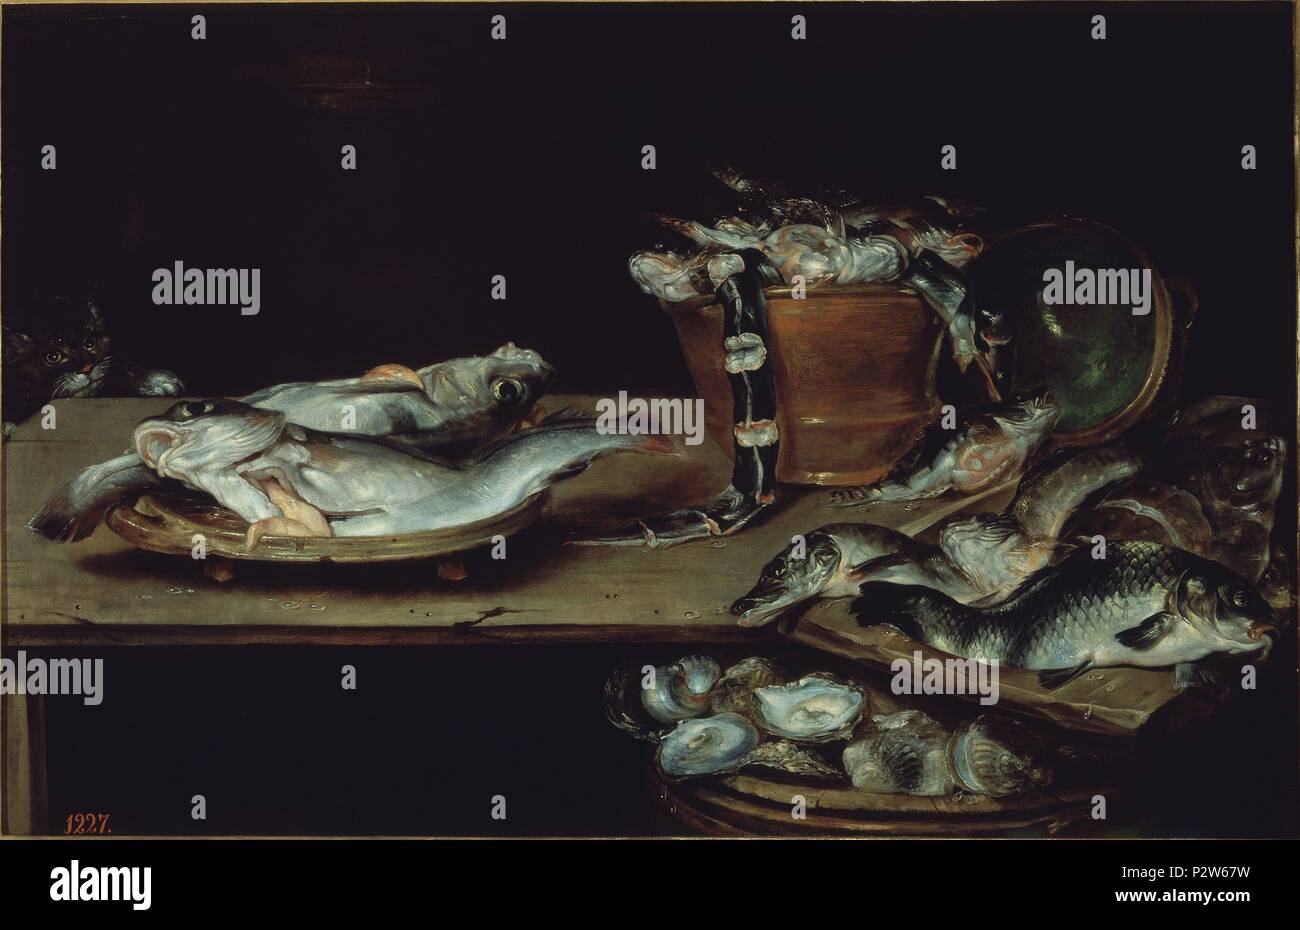 Still Life with Fish - 17e siècle - 60x91 cm - Huile sur toile - École flamande - NP 1341. Auteur : Alexander van Adriaenssen (1587-1661). Emplacement : Museo del Prado-PINTURA, MADRID, ESPAGNE. Aussi connu sous : BODEGON : MESA CON PESCADOS, OSTRAS Y UN GATO. Banque D'Images